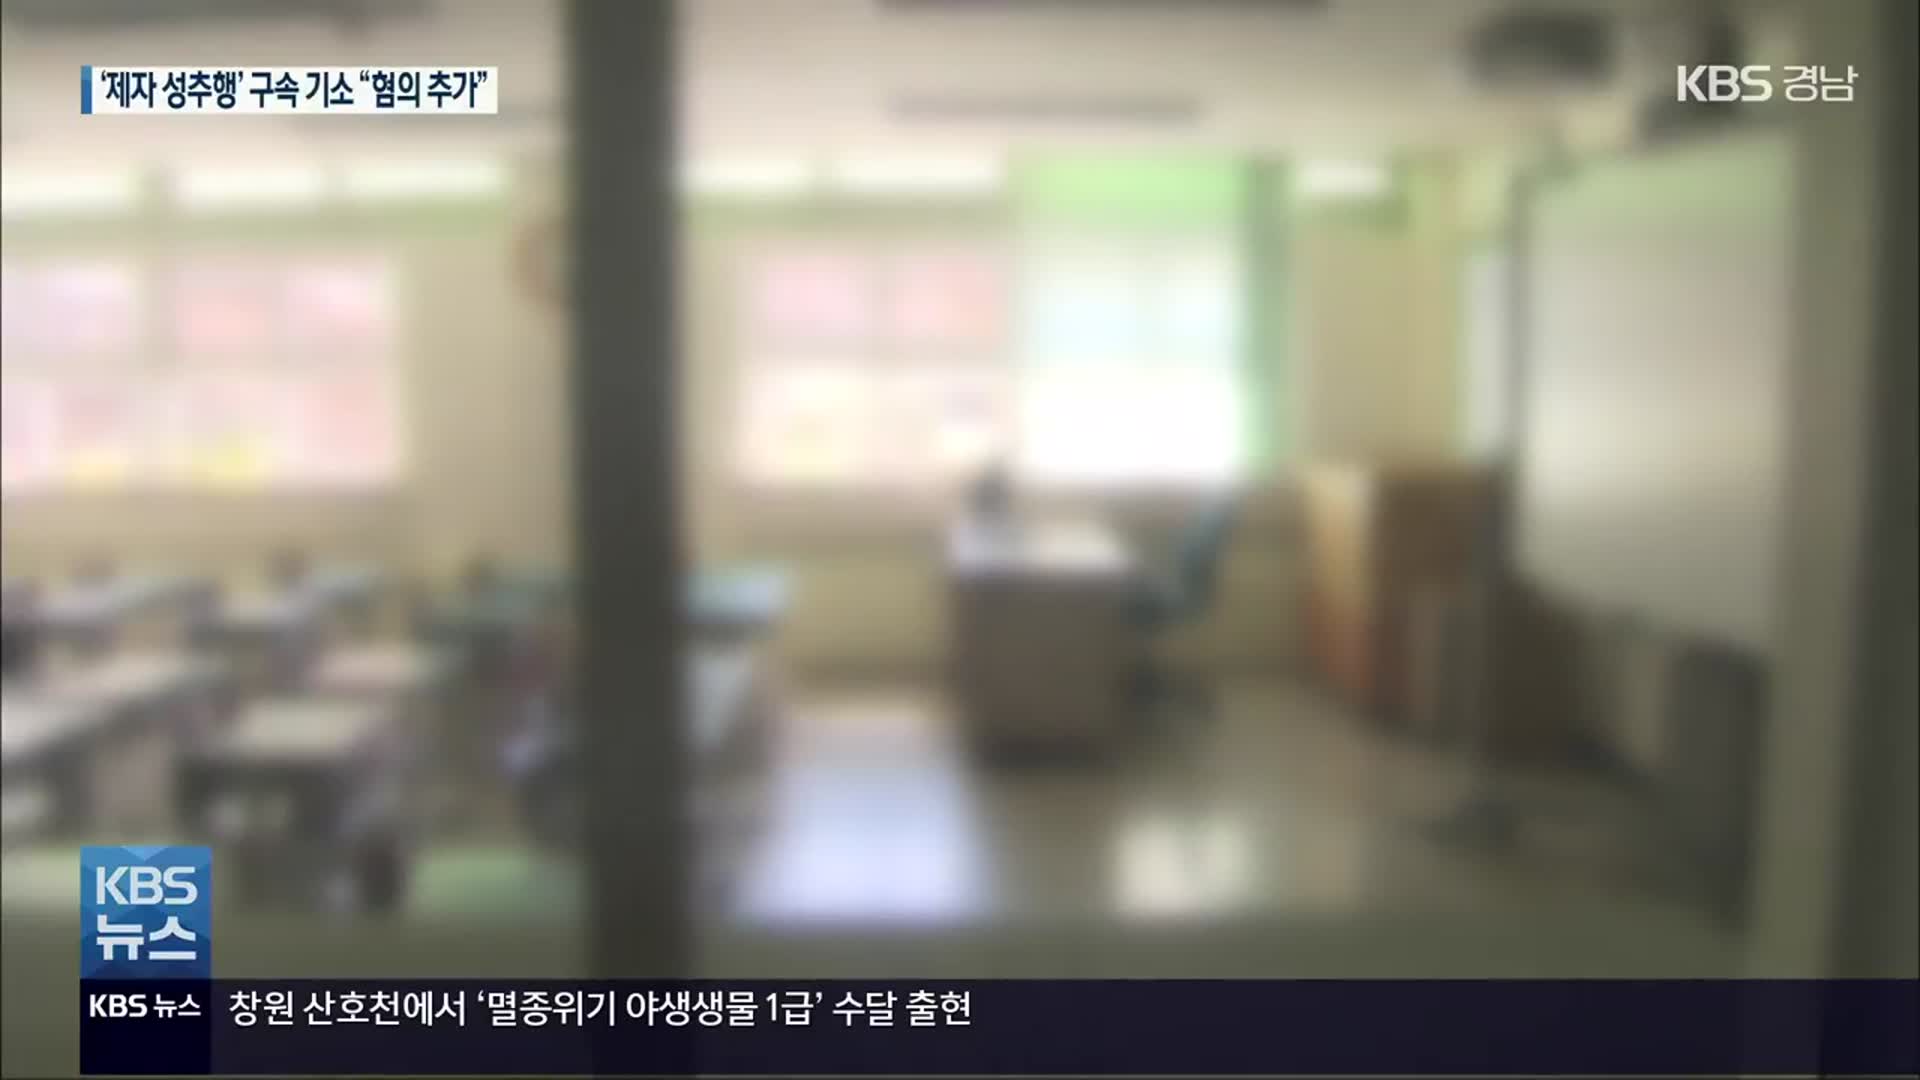 제자 성추행 초등학교 교사 구속 기소…“추가 혐의 확인”